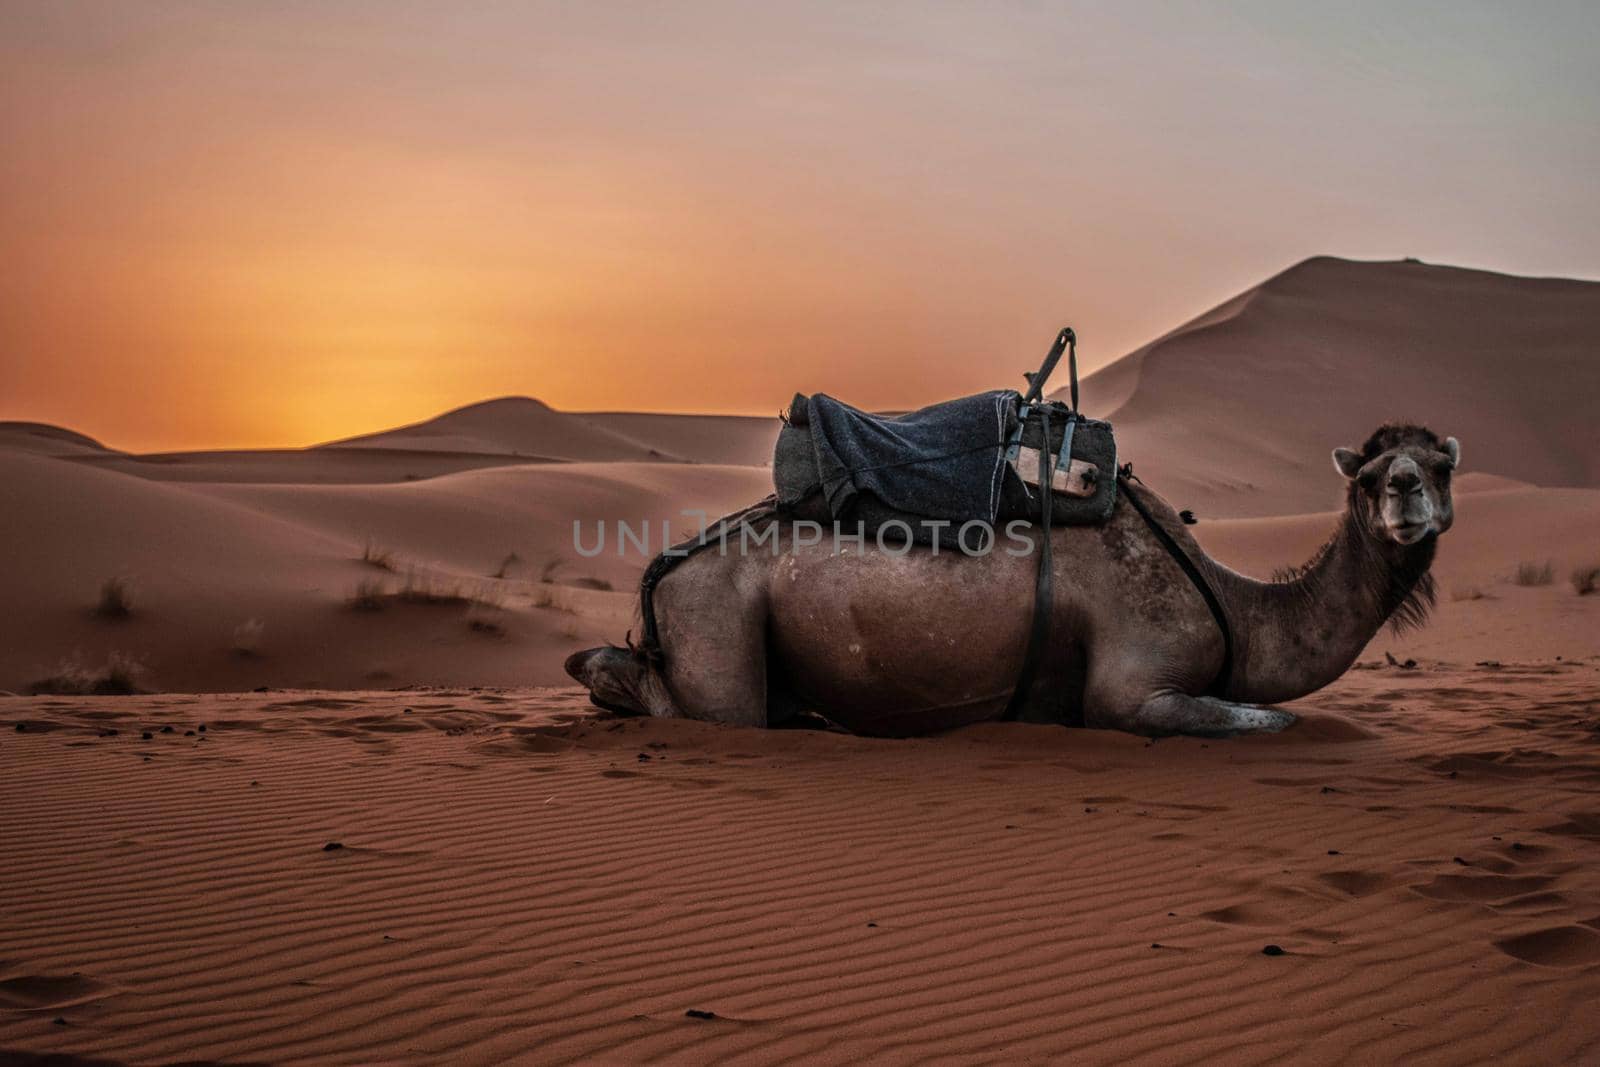 Camel Dromedary animal in Sahara Desert with sunset and sand dunes by Skrobanek